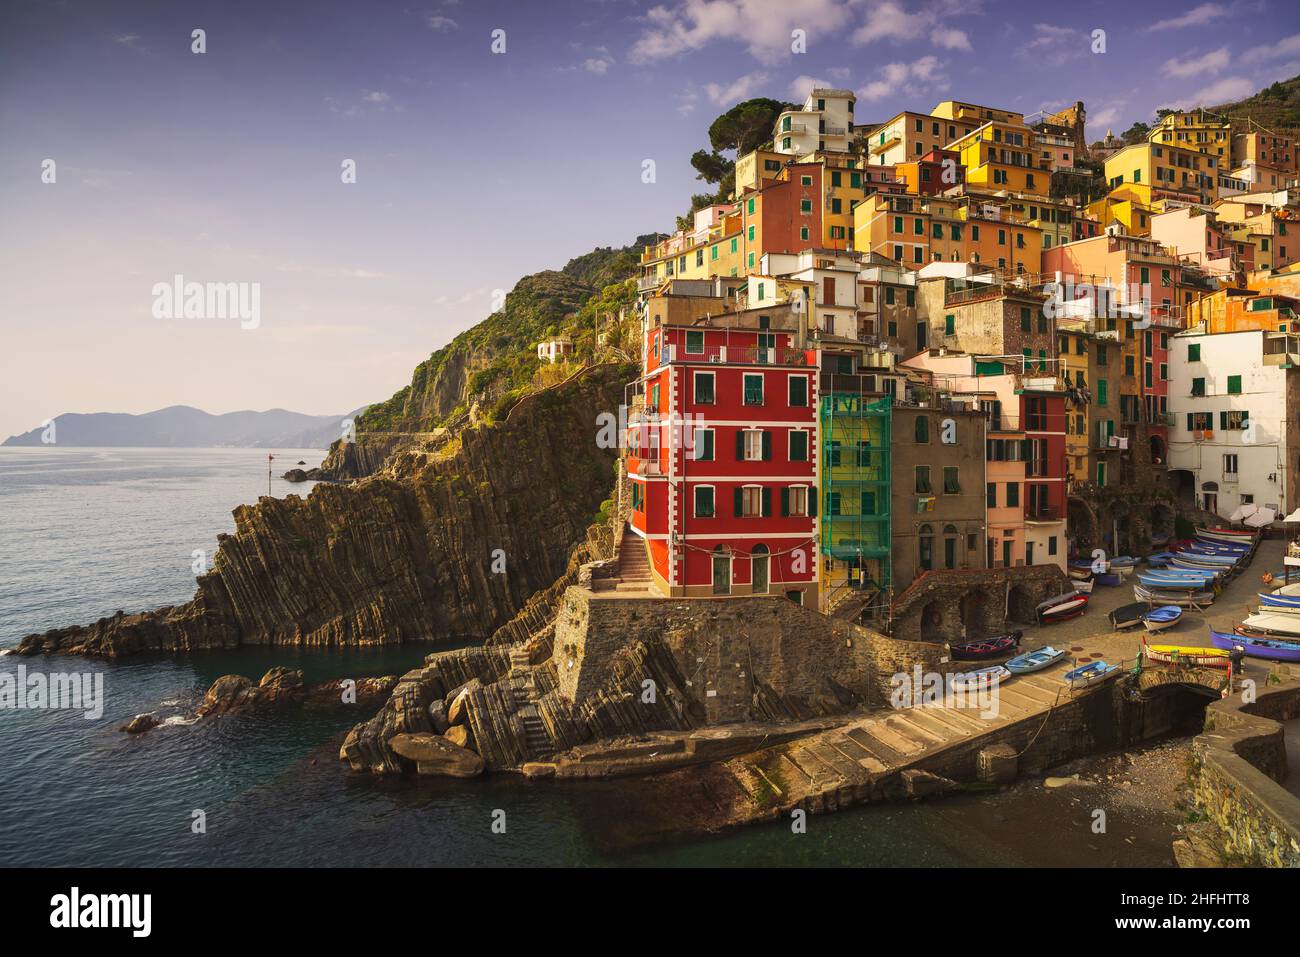 Riomaggiore casco antiguo, cabo, casas coloridas y el mar. Paisaje marino en el Parque Nacional Cinque Terre, región de Liguria, Italia, Europa. Foto de stock